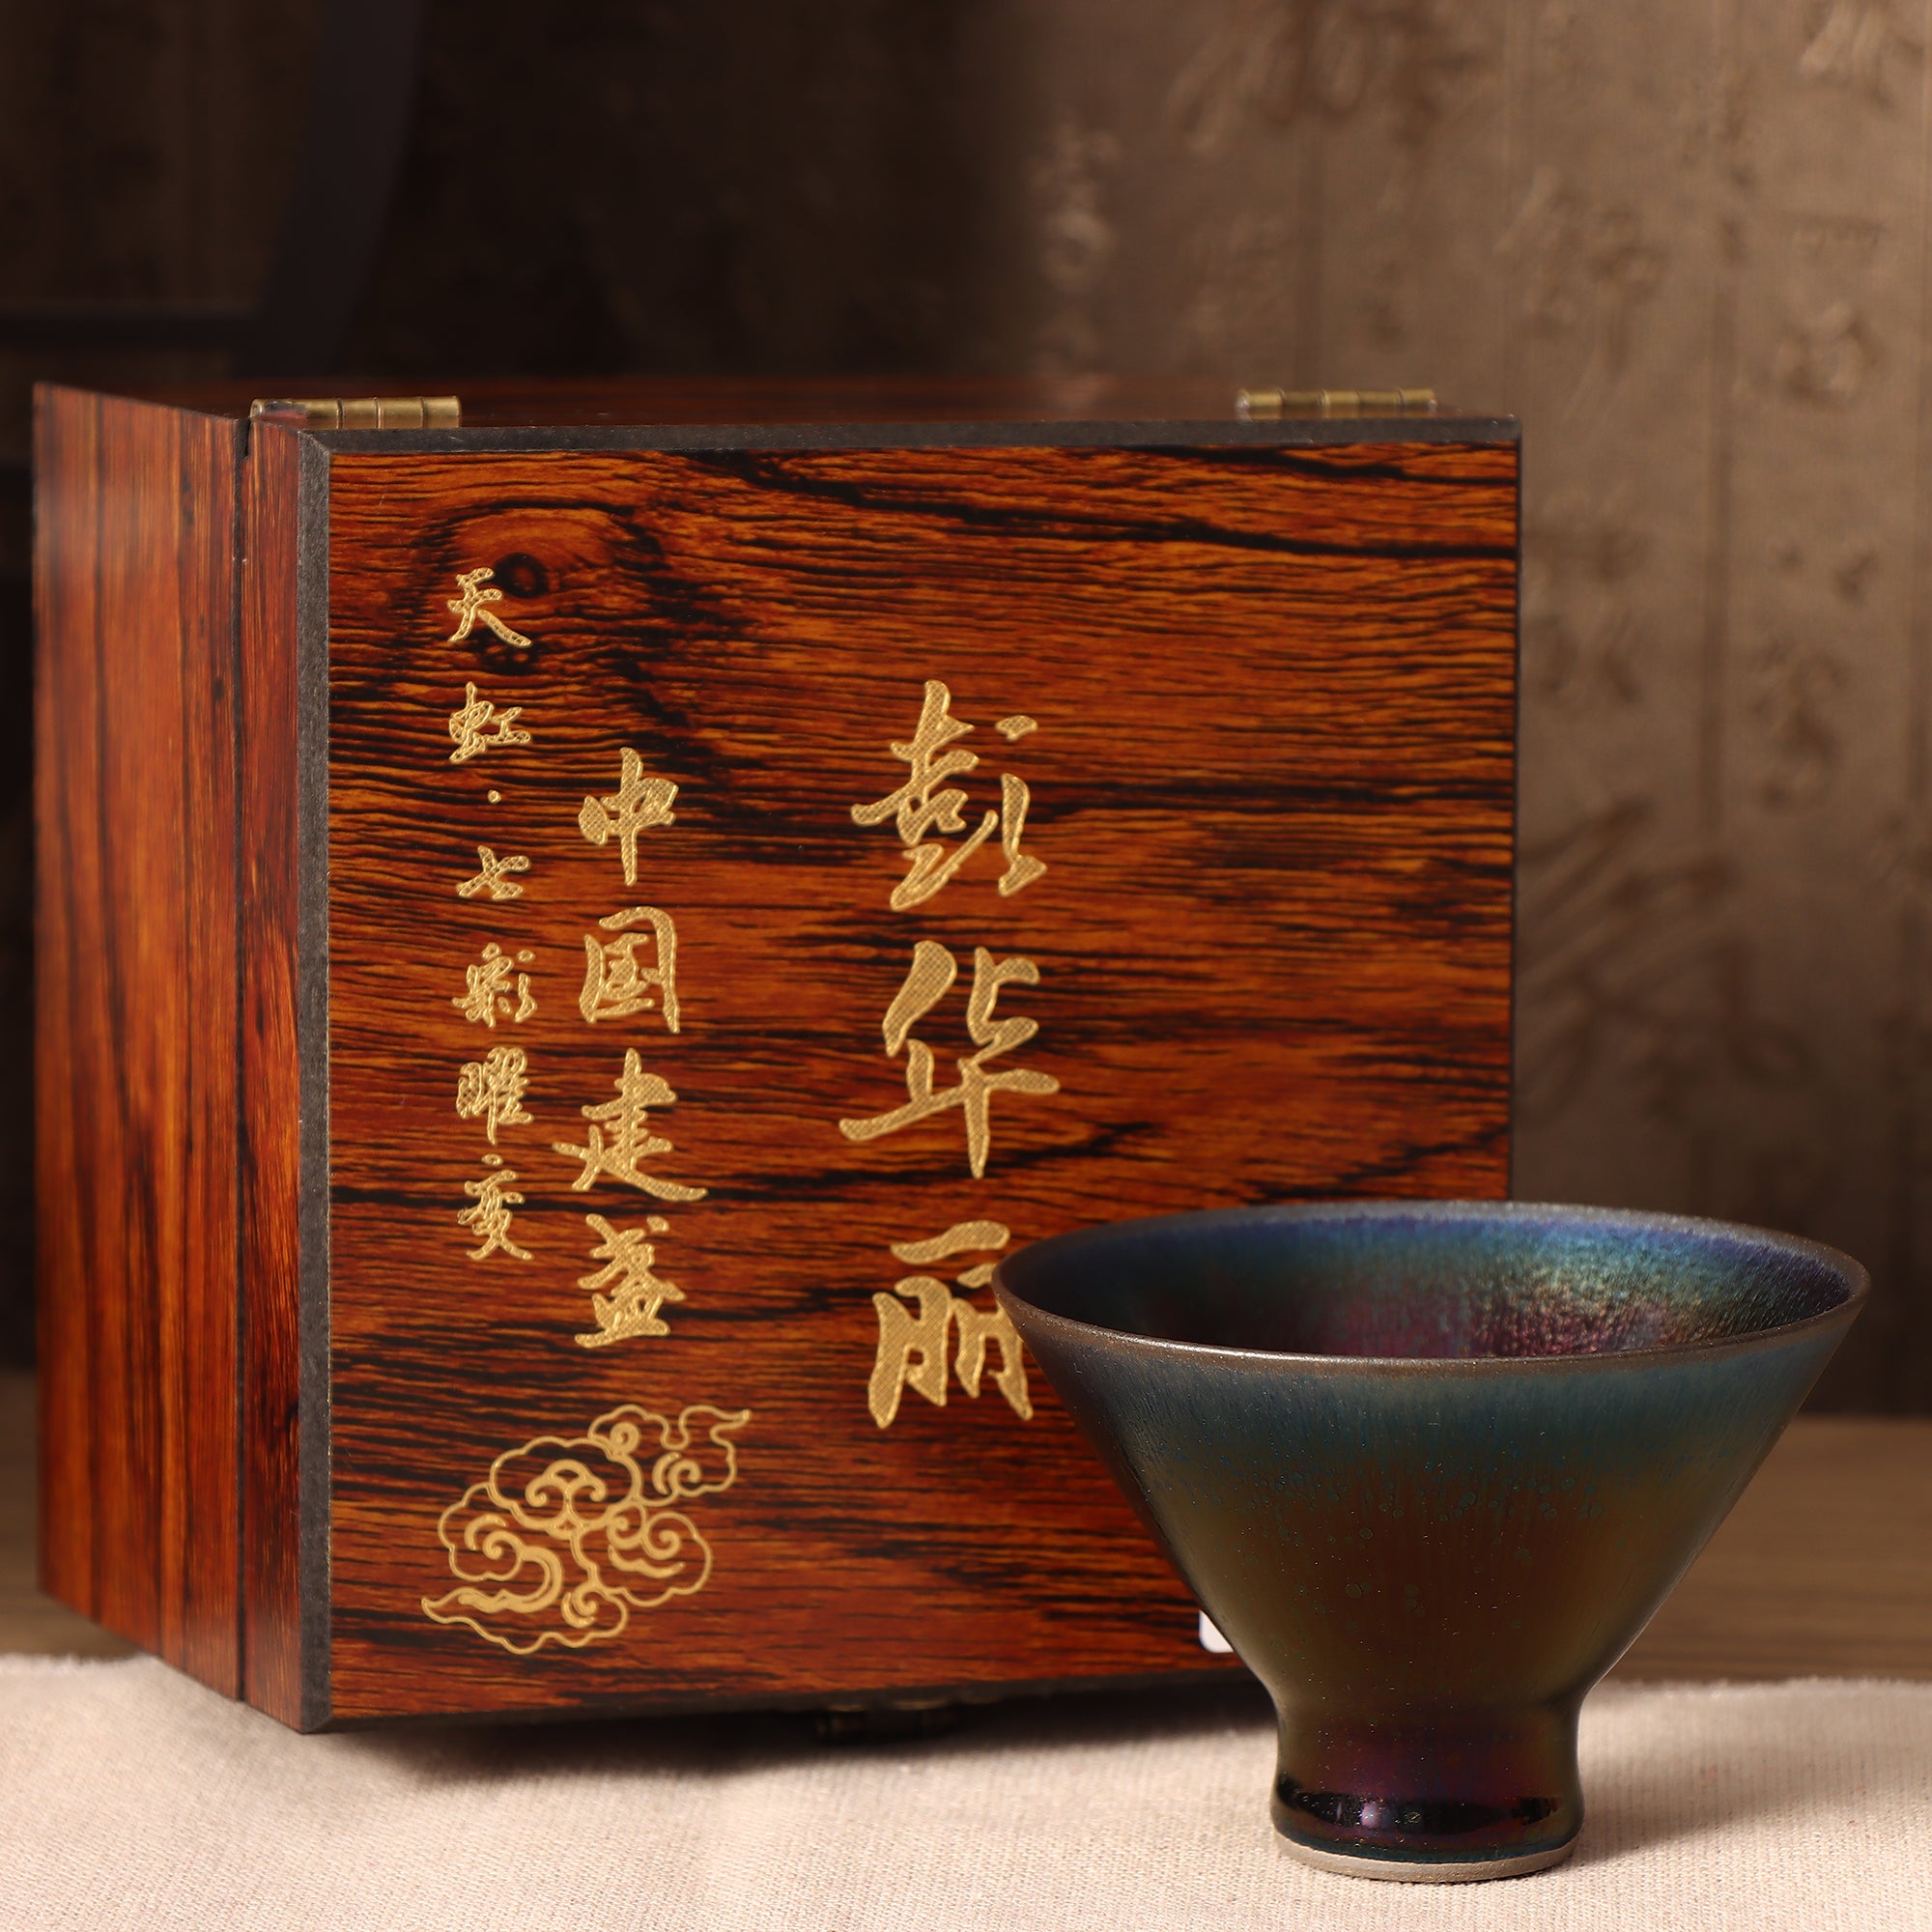 Master Peng Lihua Jianzhan teacup